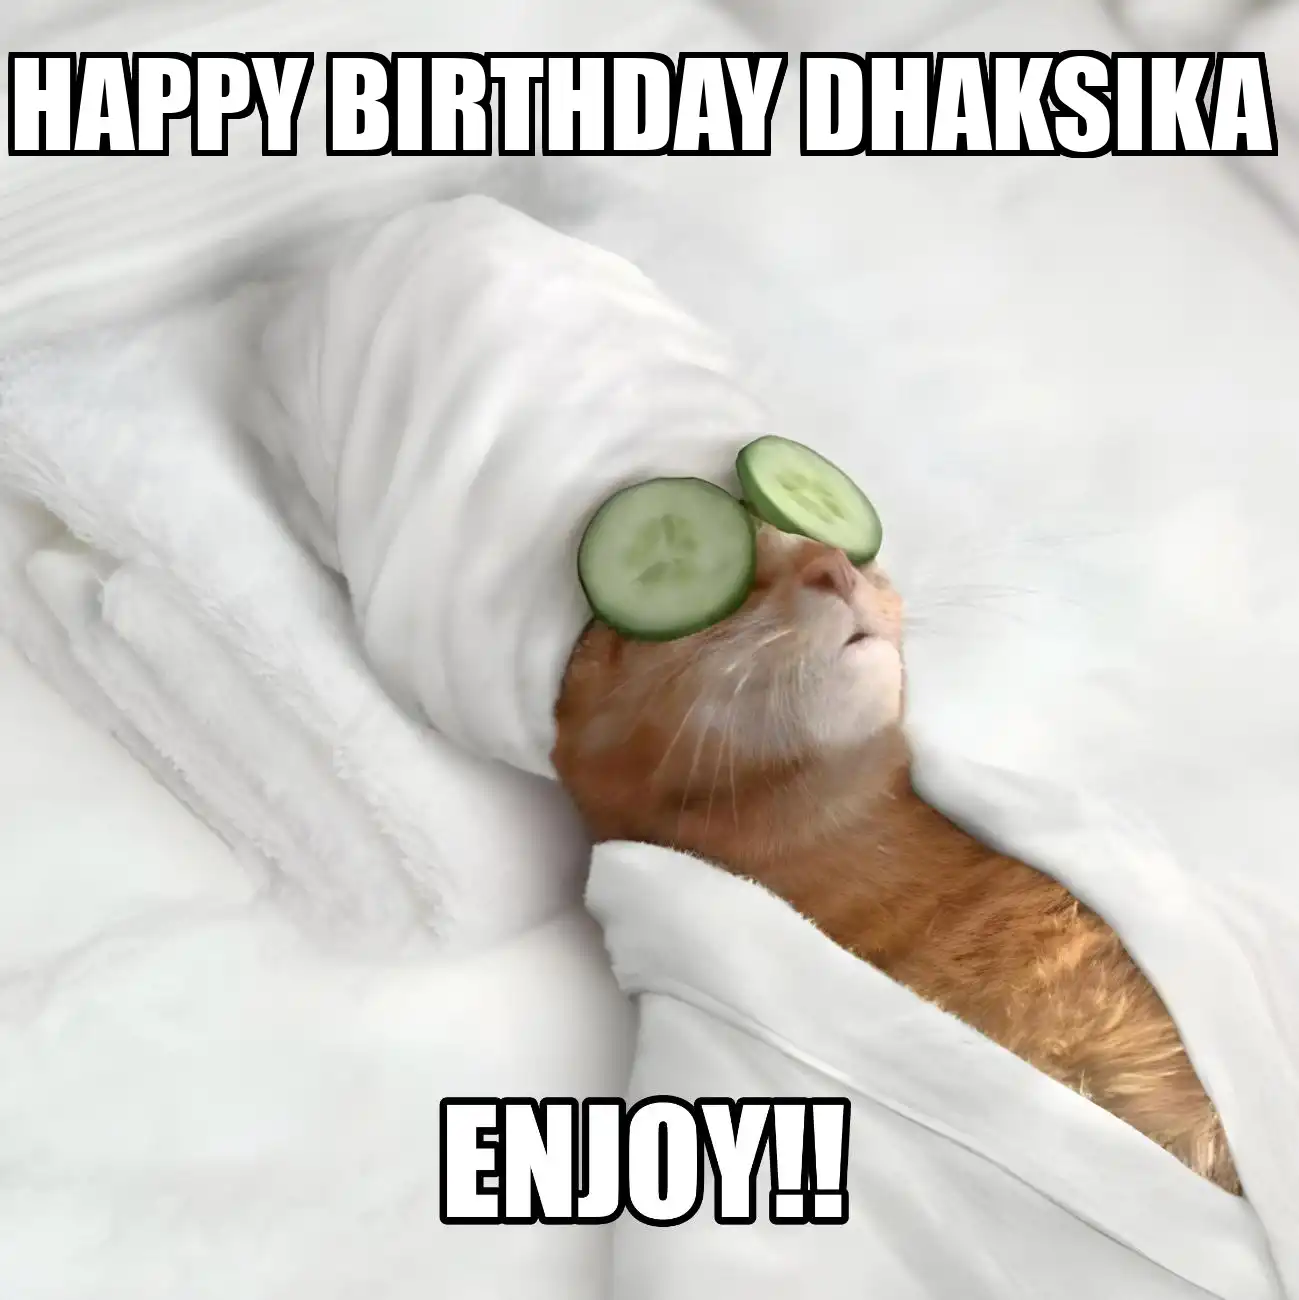 Happy Birthday Dhaksika Enjoy Cat Meme